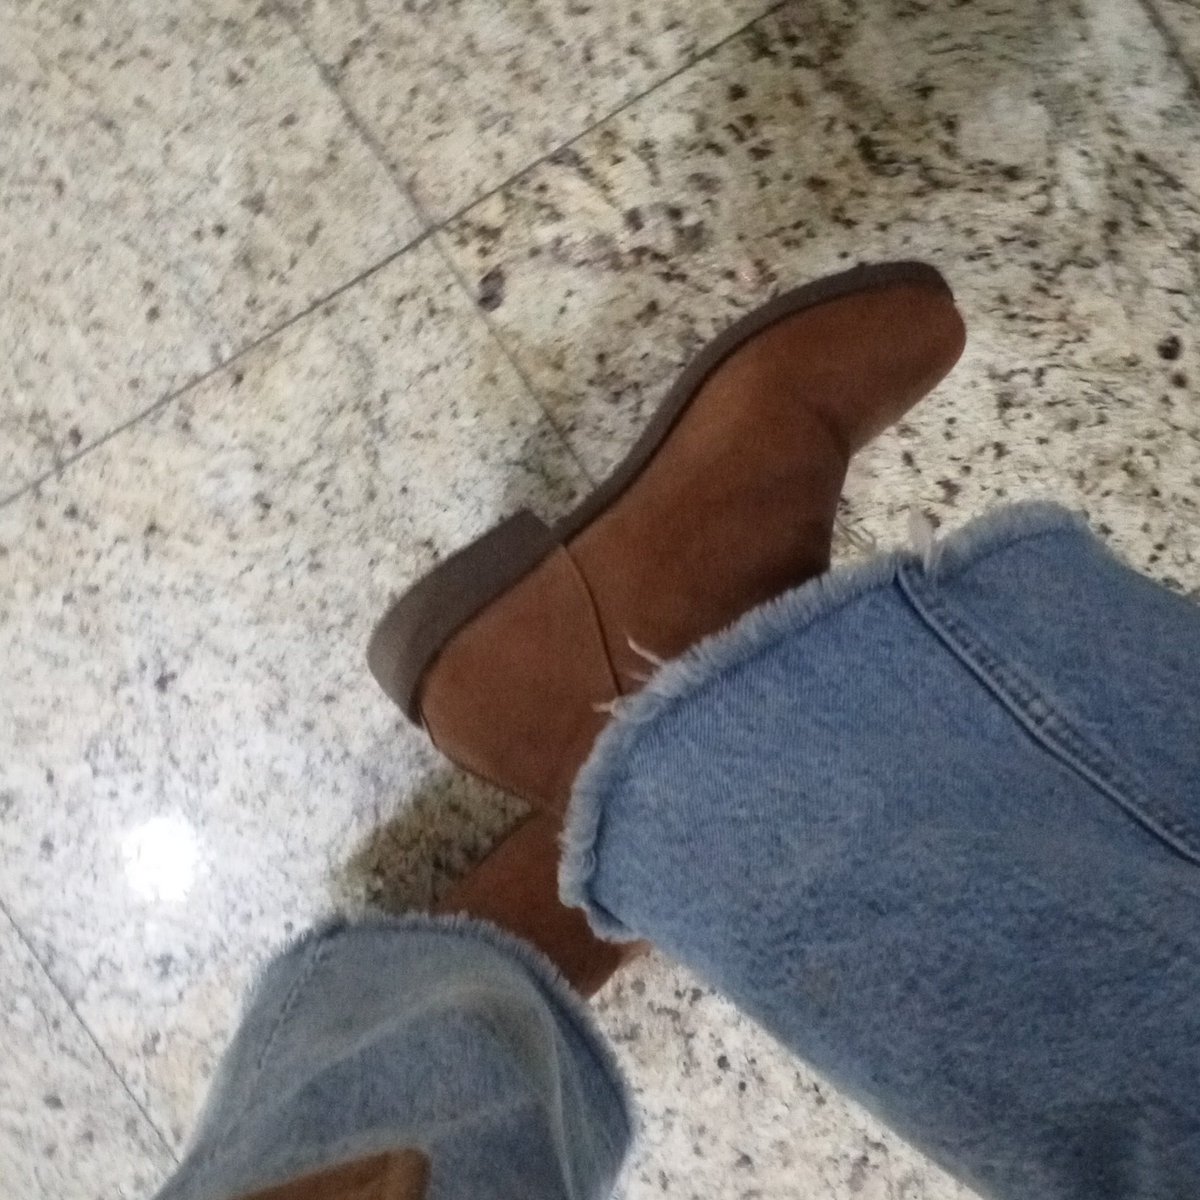 Chicas por si acaso encontré una promo de botas 2×150, hay tallas 35-40. La tienda se llama Rafaelha en la calle Tarija recomiendo 10/10, compre 6 pares JAJAJA